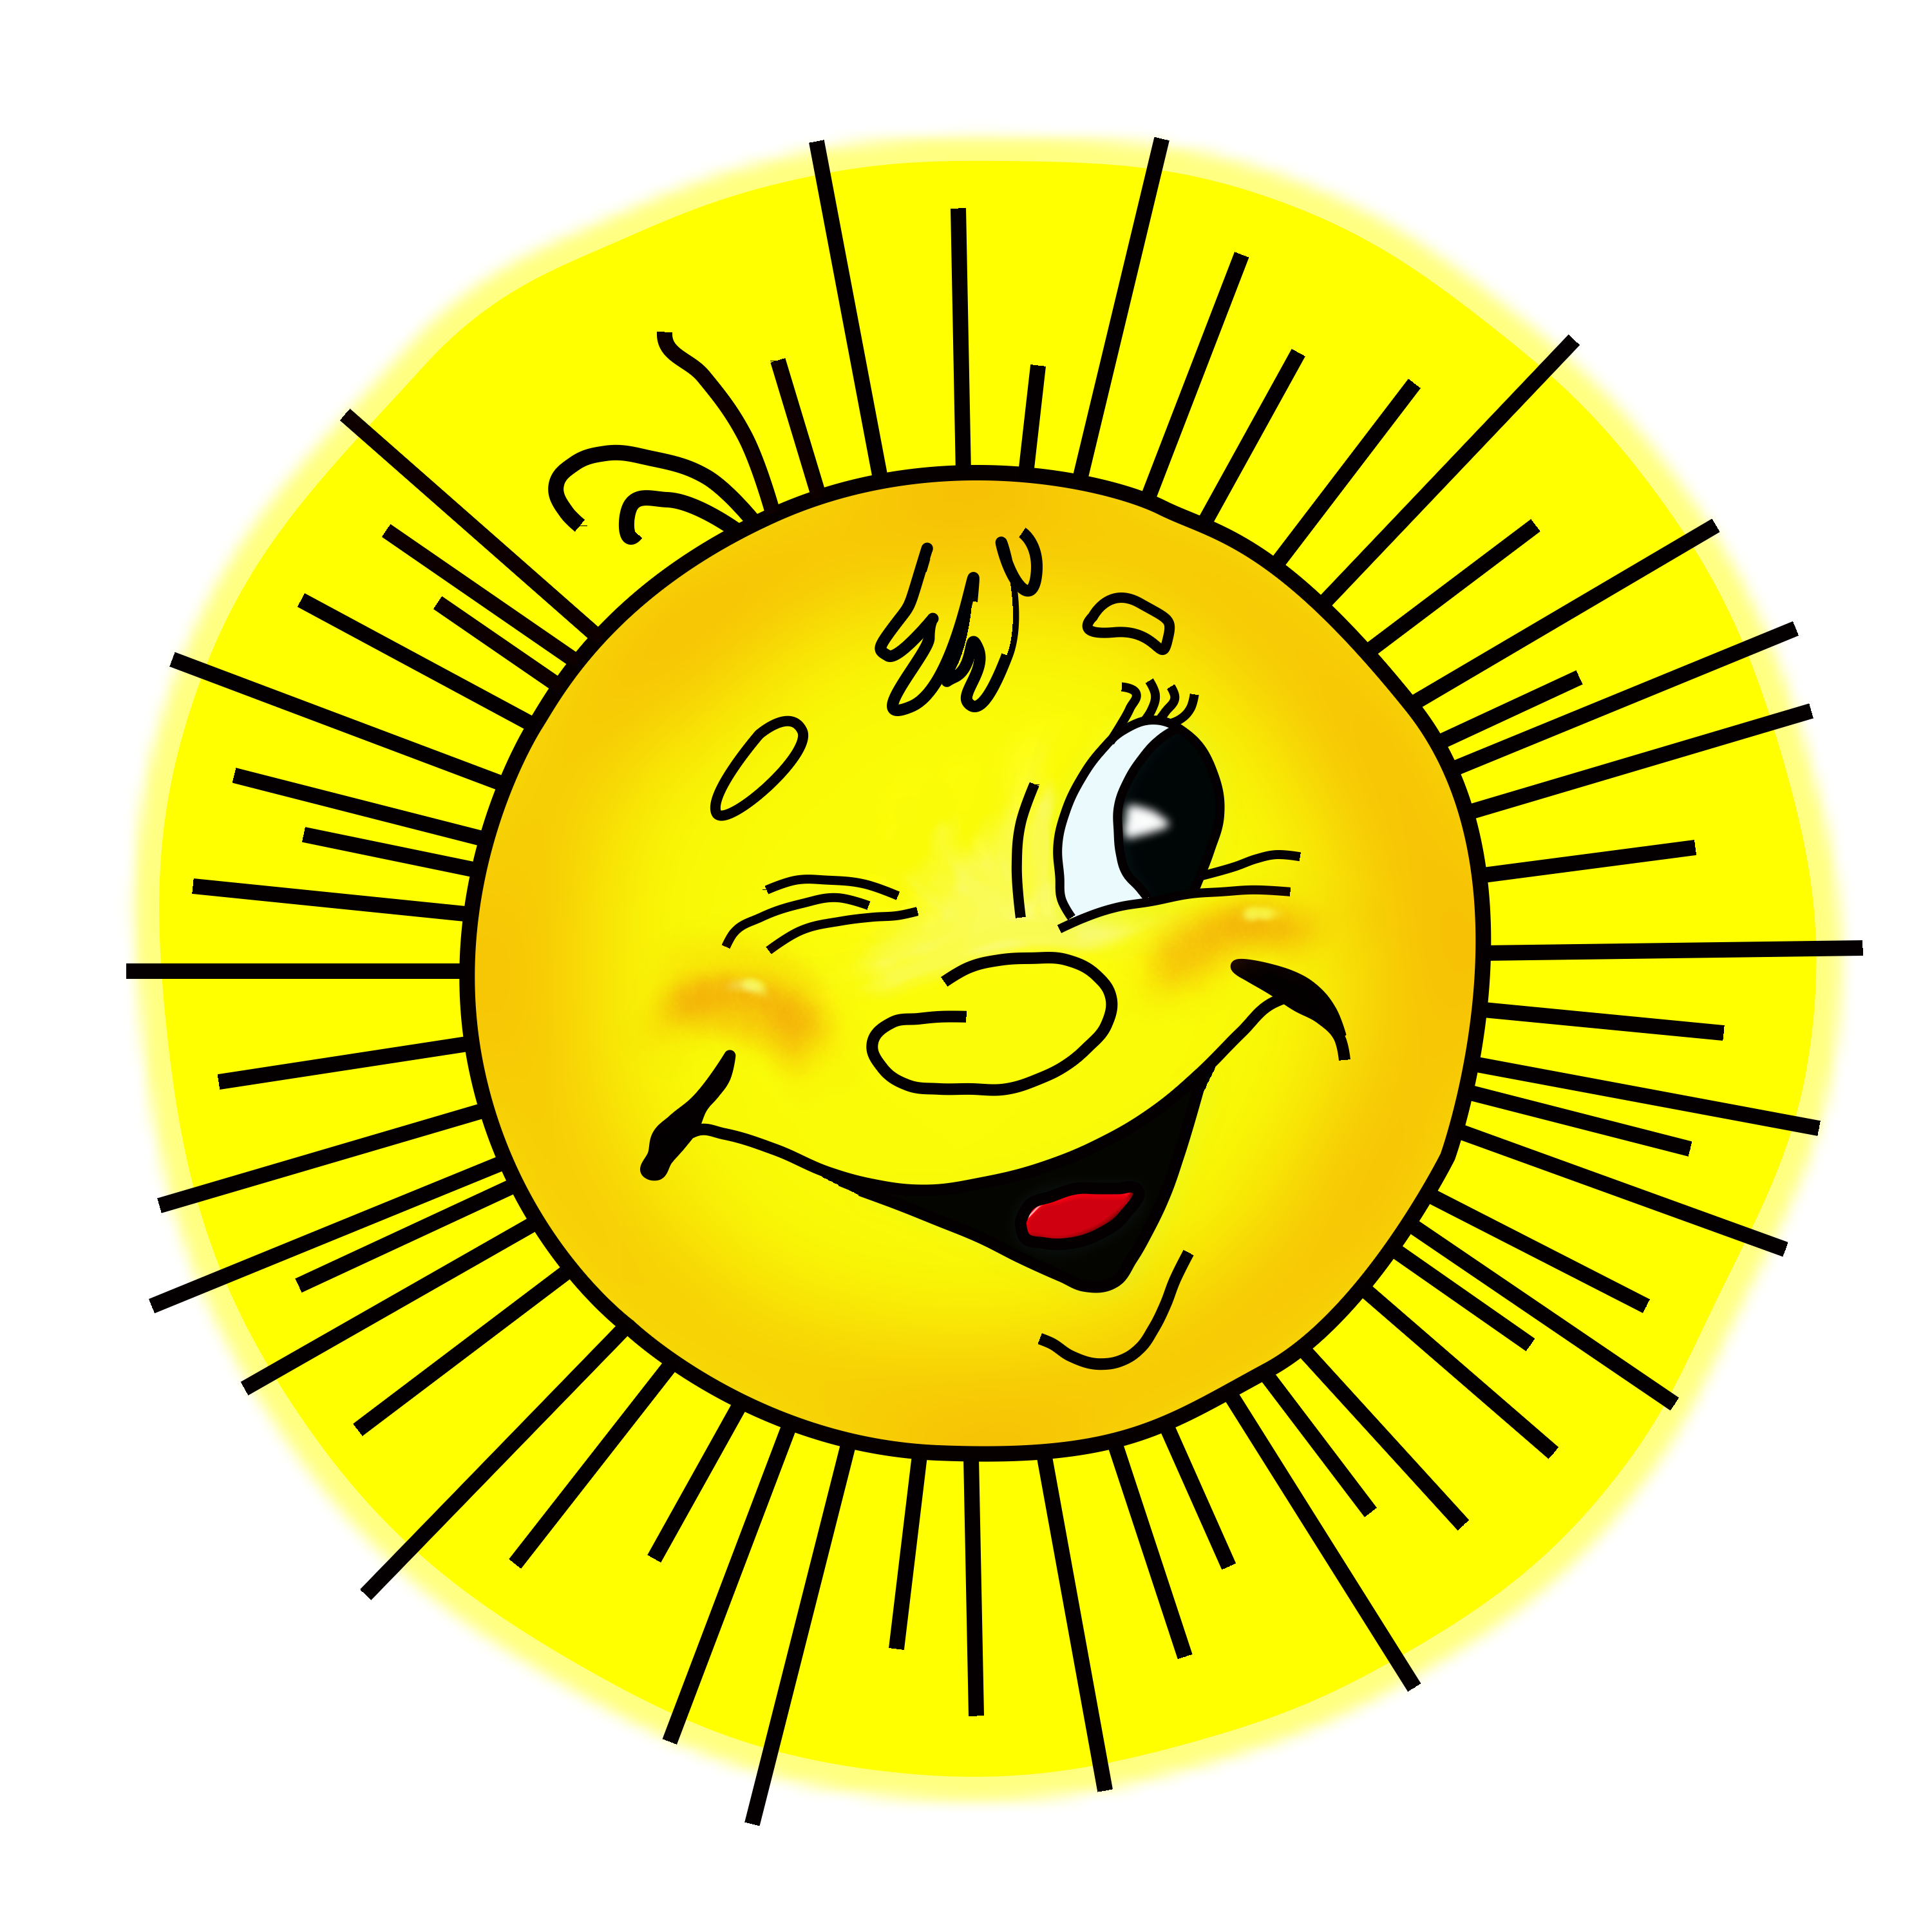 Цветные картинки солнышка. Солнышко улыбается. Веселое солнышко. Солнышко рисунок. Солнышко картинка для детей.